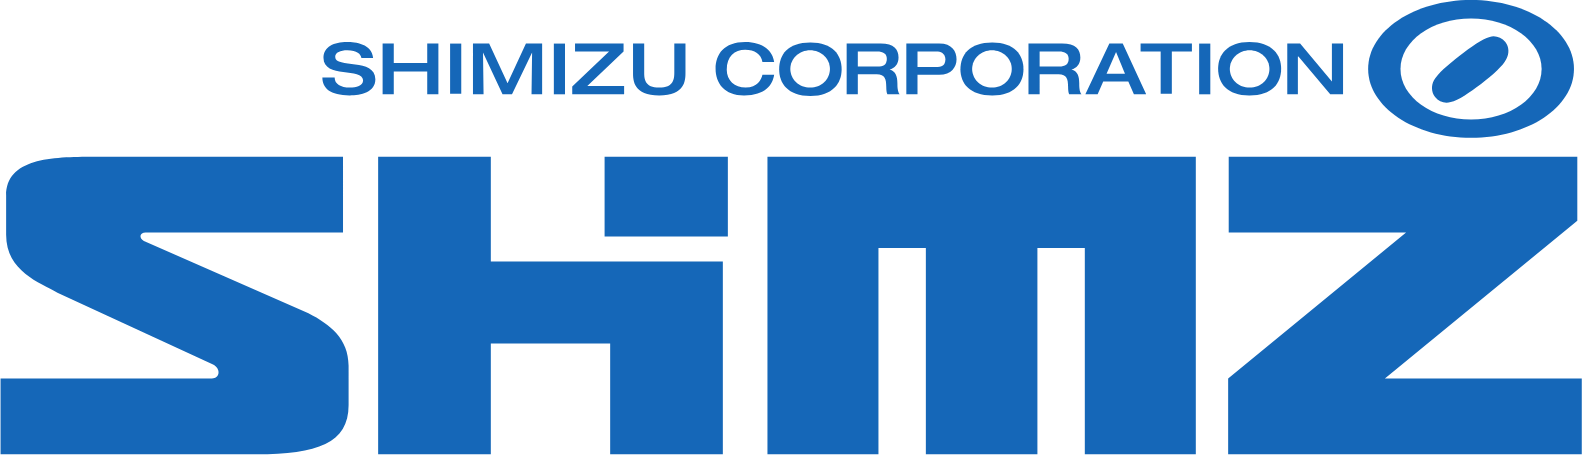 Shimizu Corporation logo large (transparent PNG)